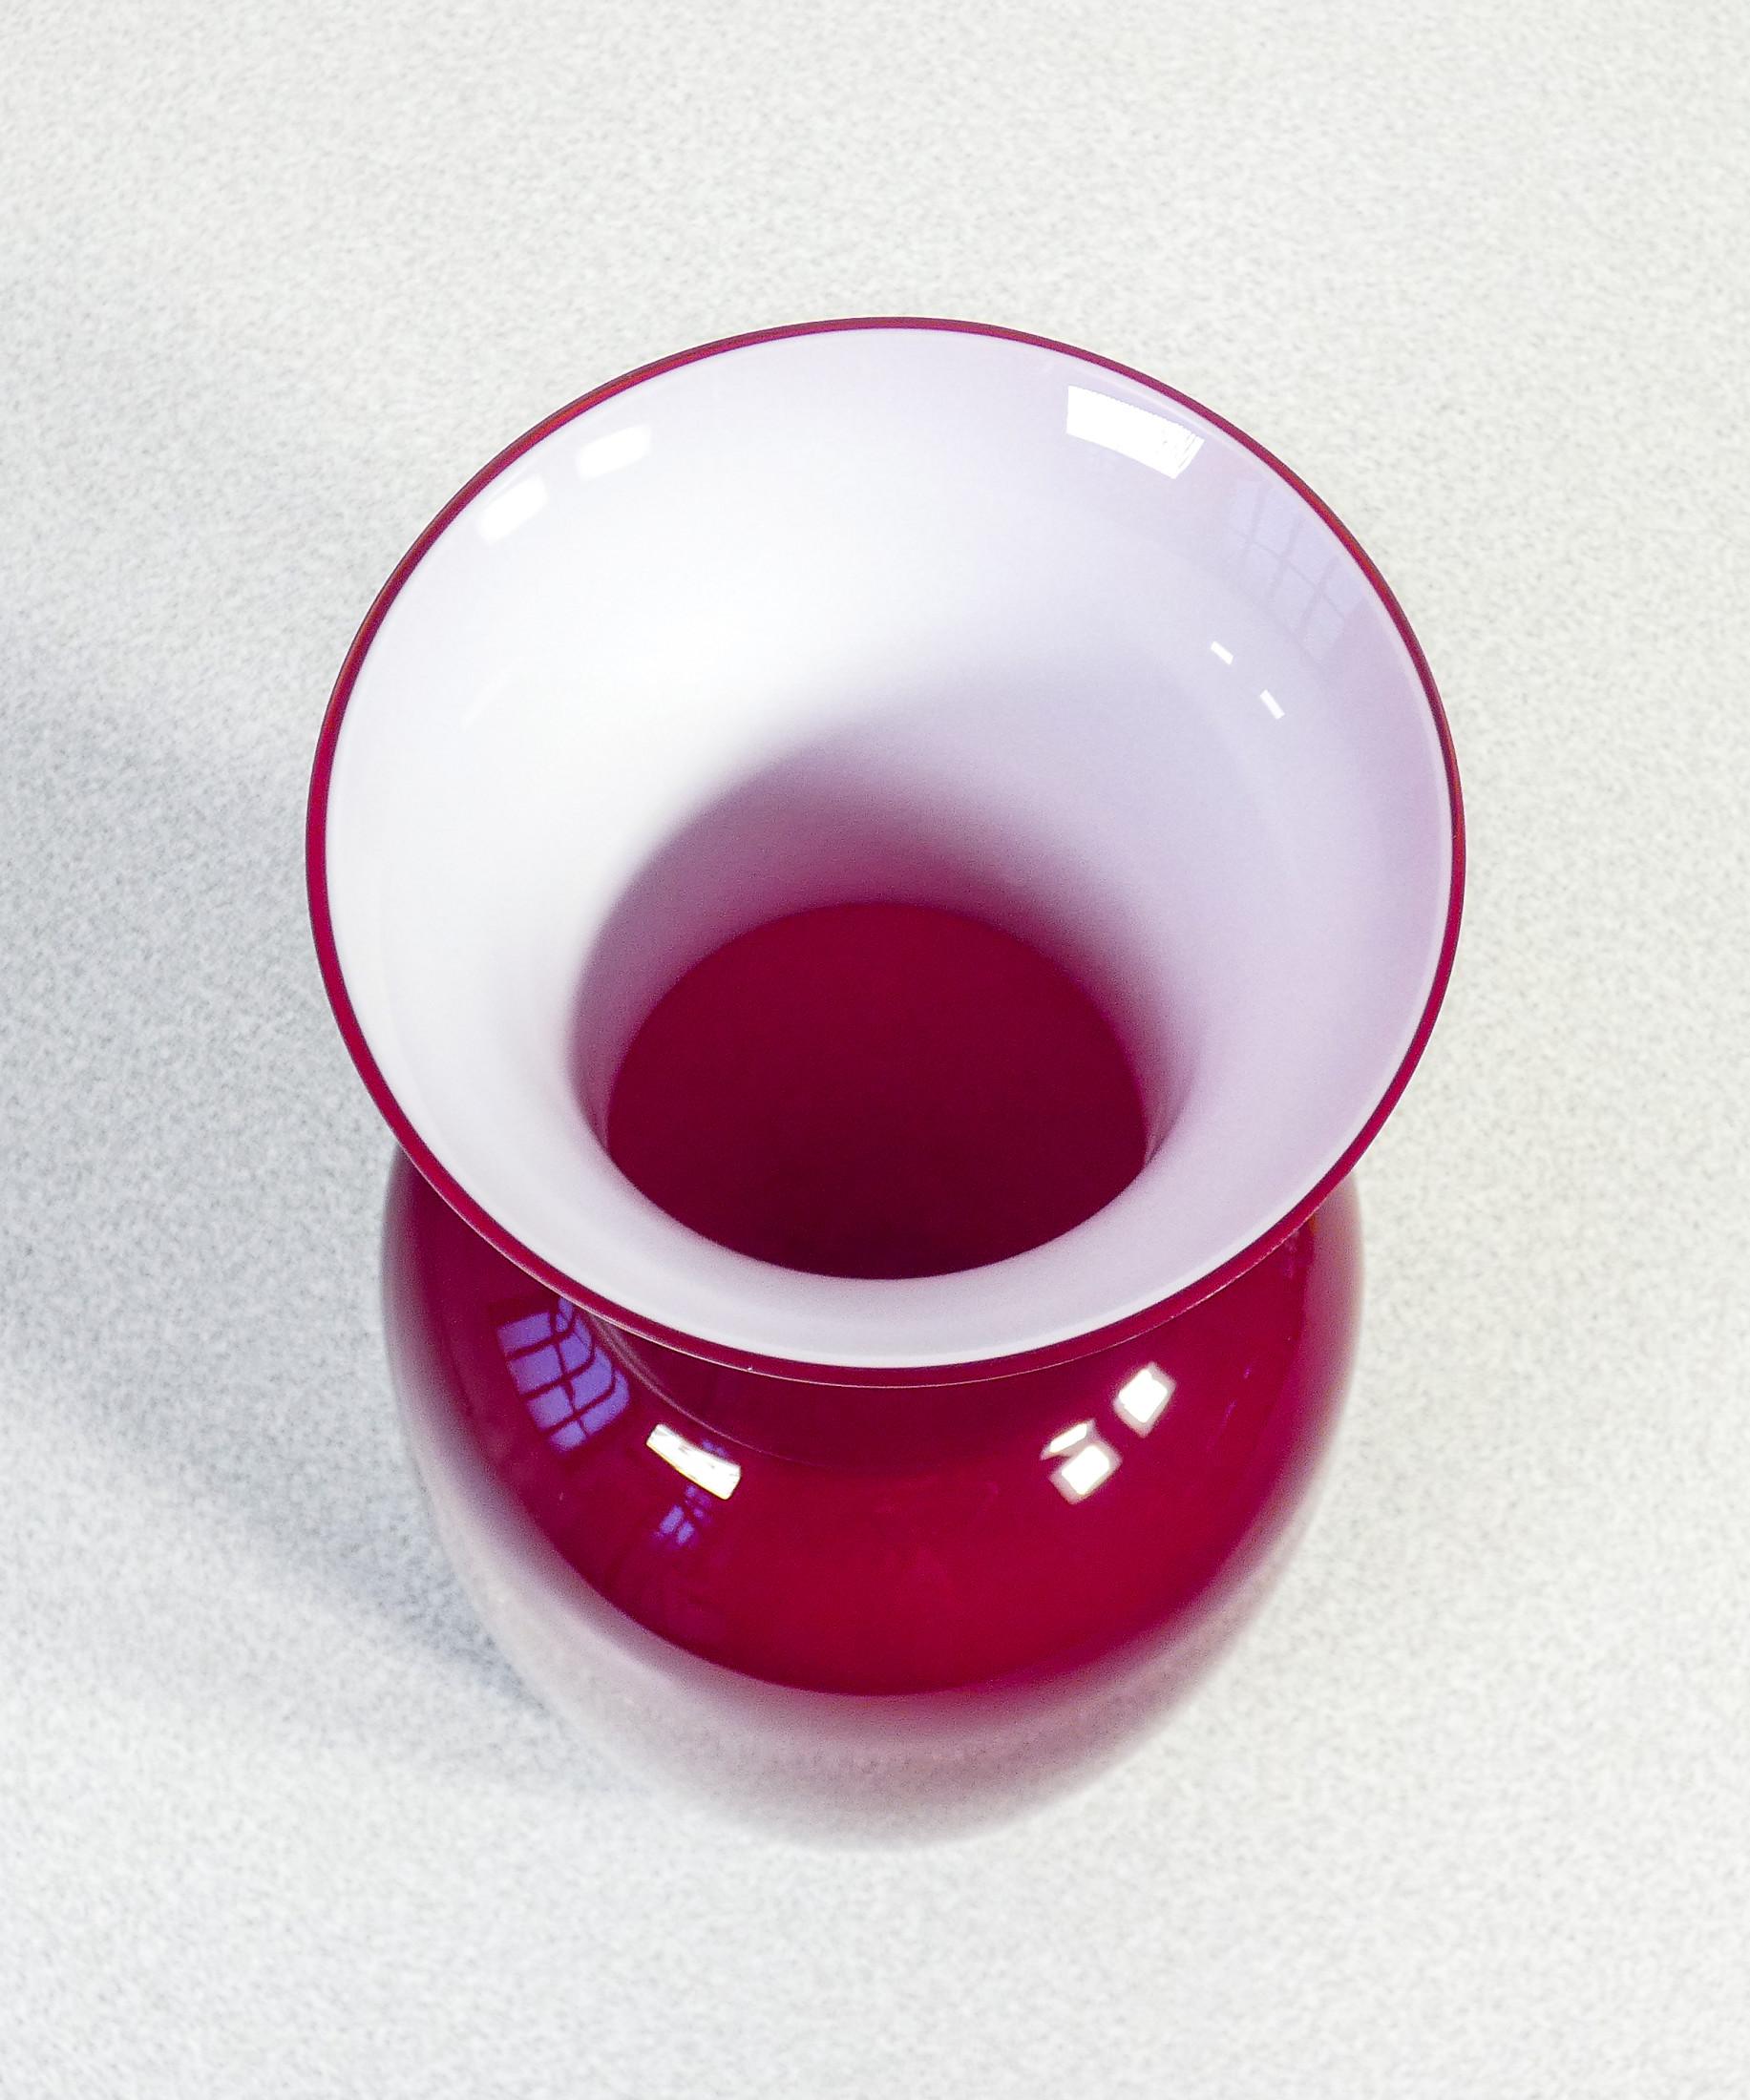 Glass Vase Opalino Signed Venini, Original Design by Paolo Venini, Red Version